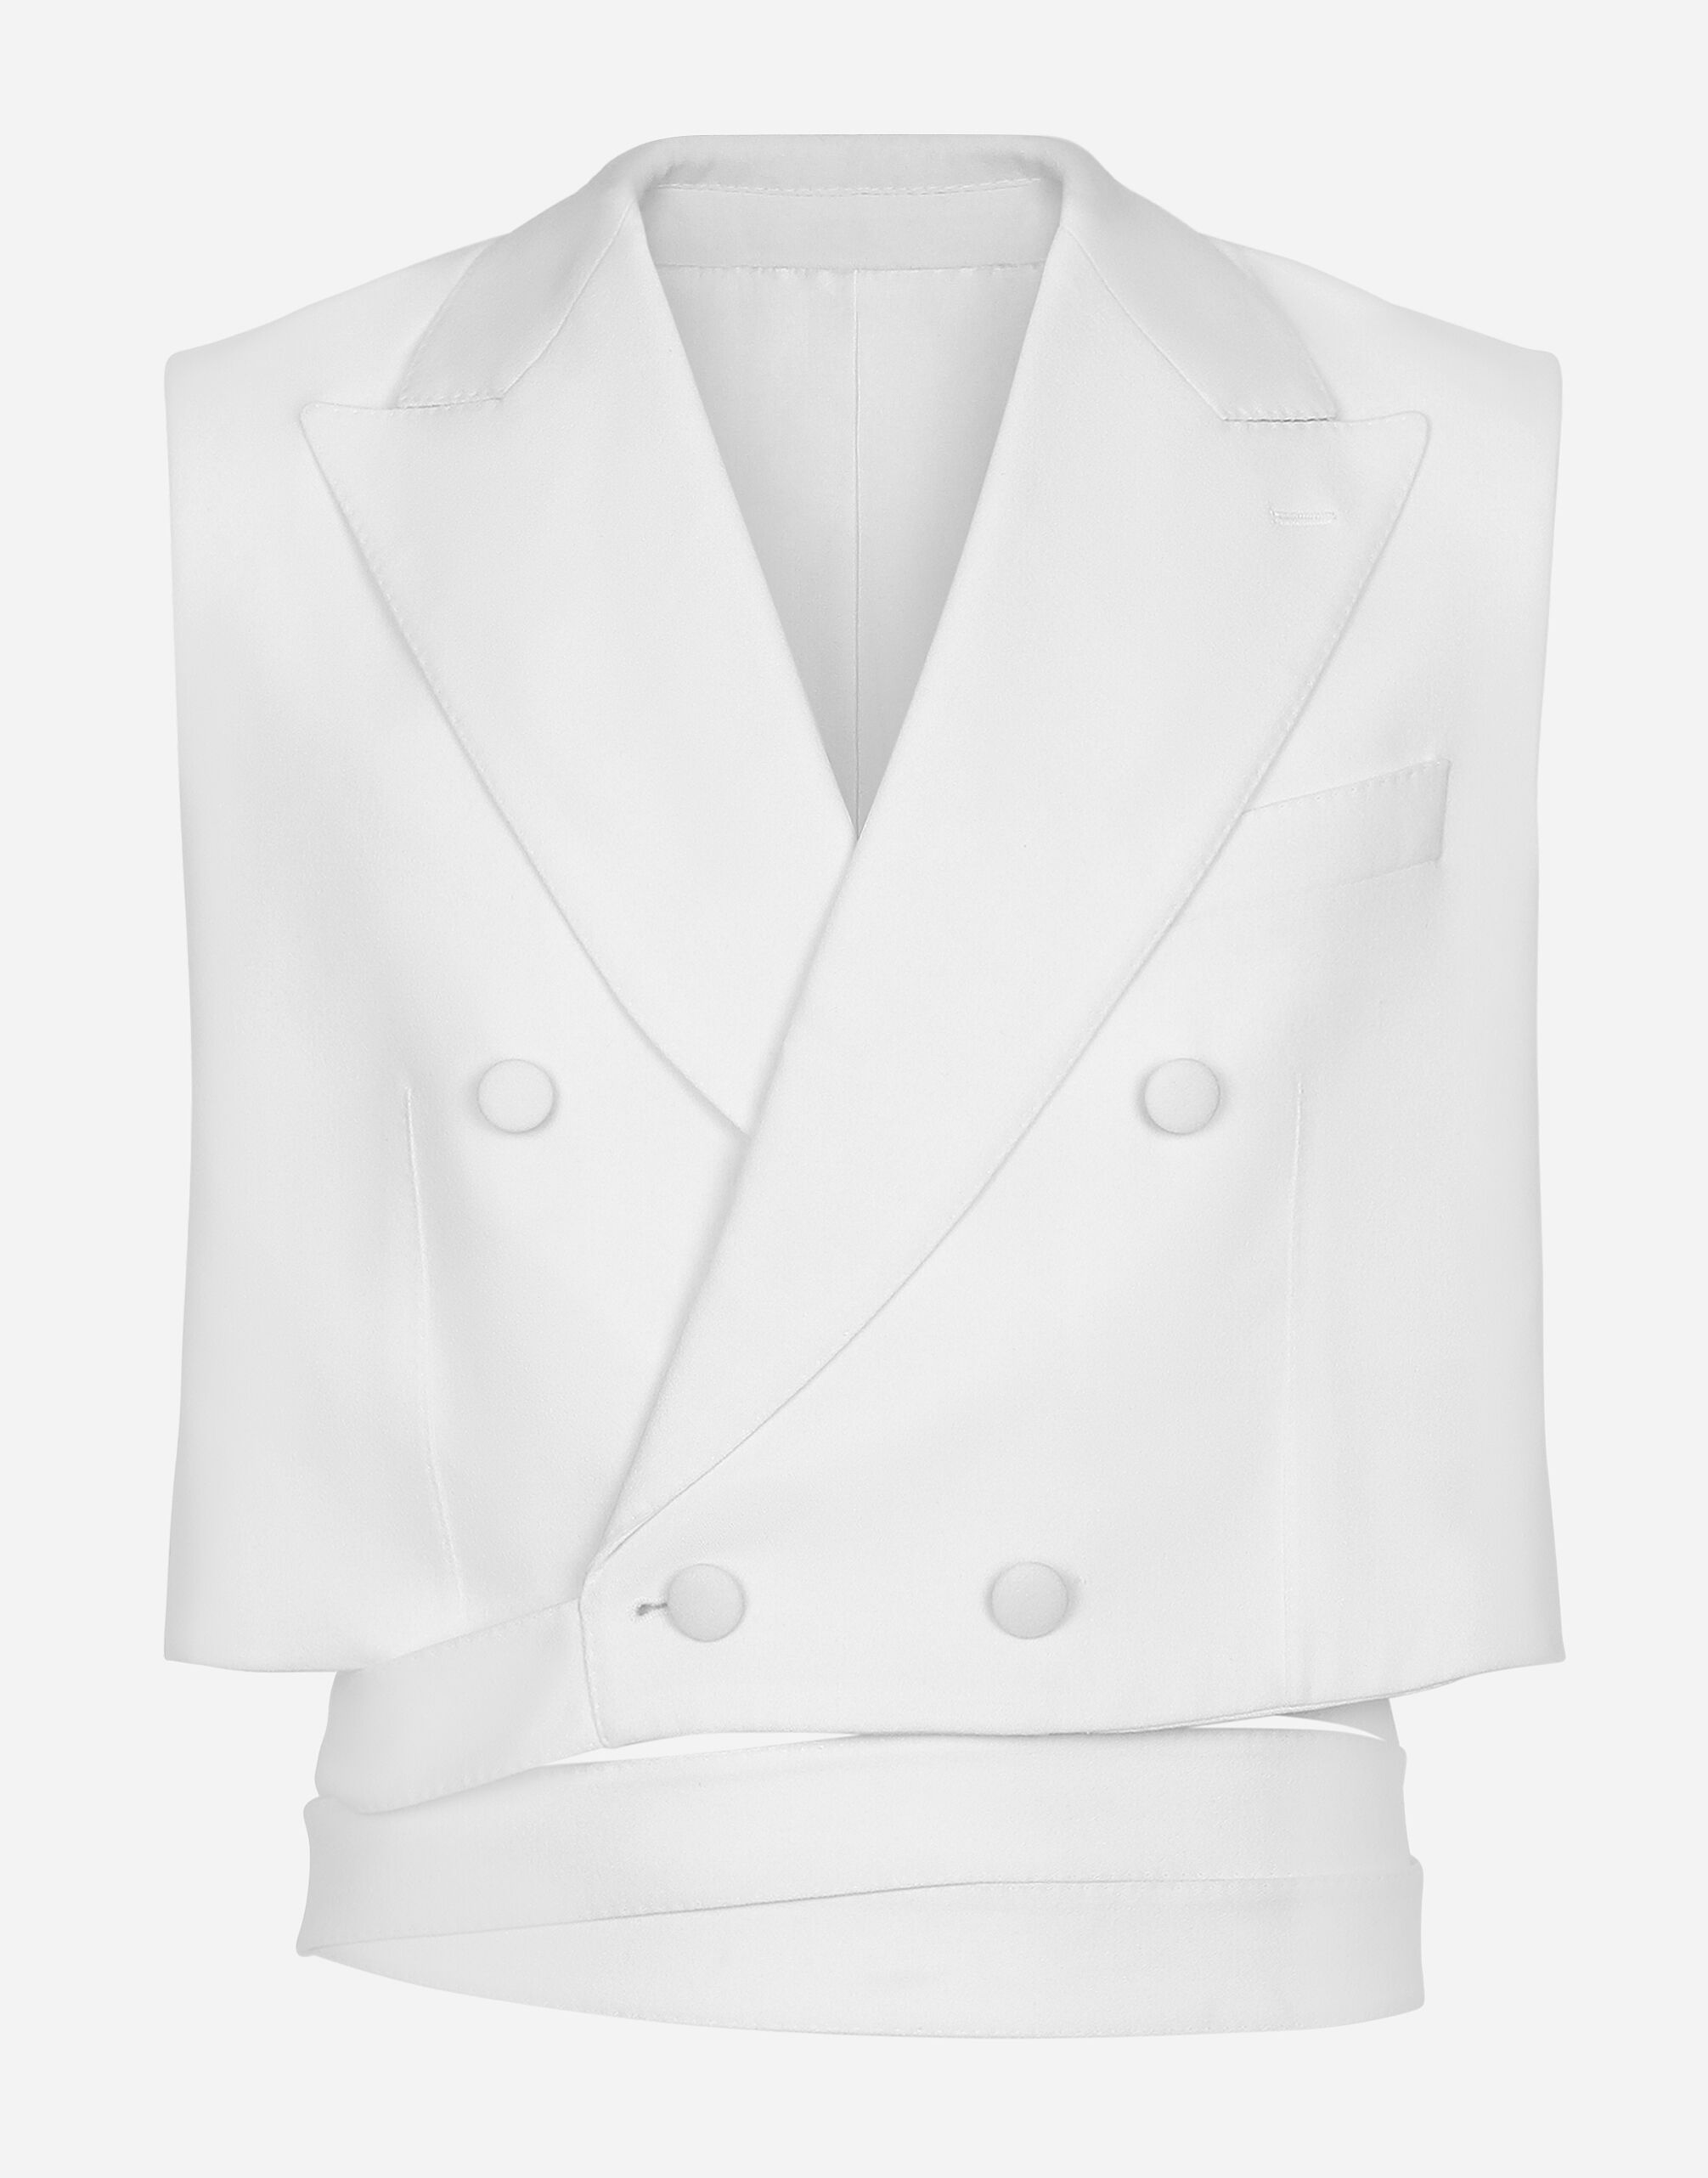 Dolce & Gabbana Gilet doppiopetto corto in lana con cintura Bianco GKAHMTFUTBT